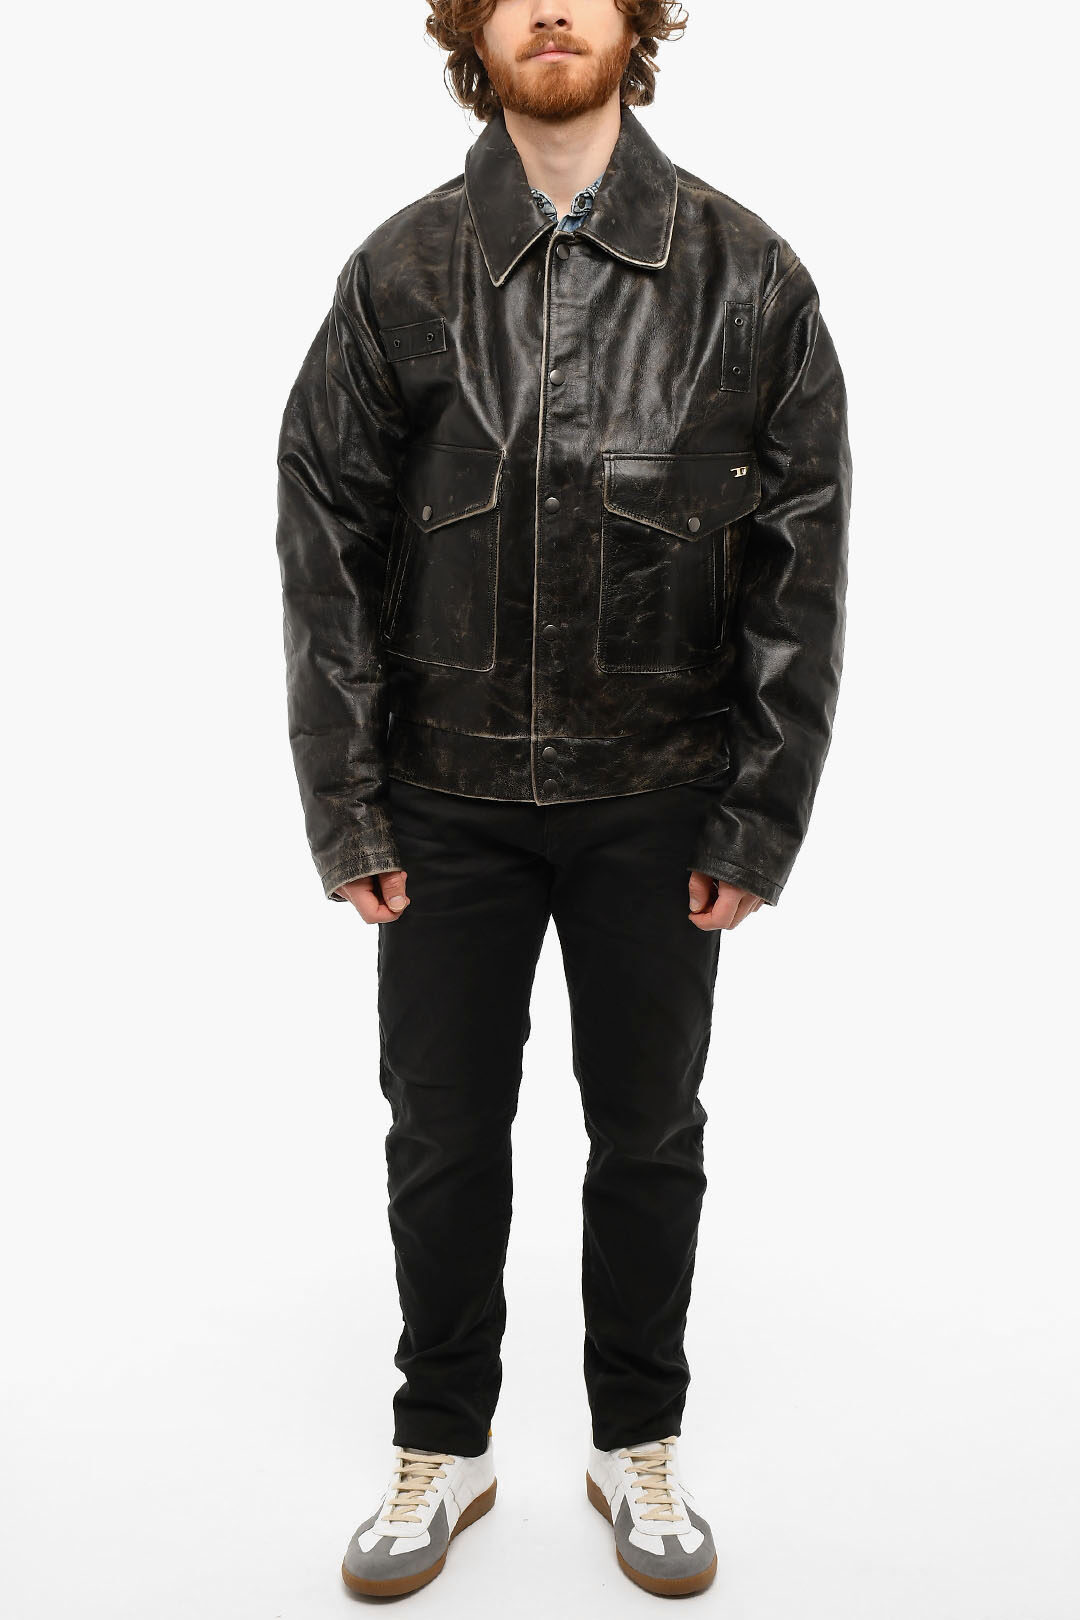 Diesel Vintage effect L-MUDDY Leather Jacket men - Glamood Outlet